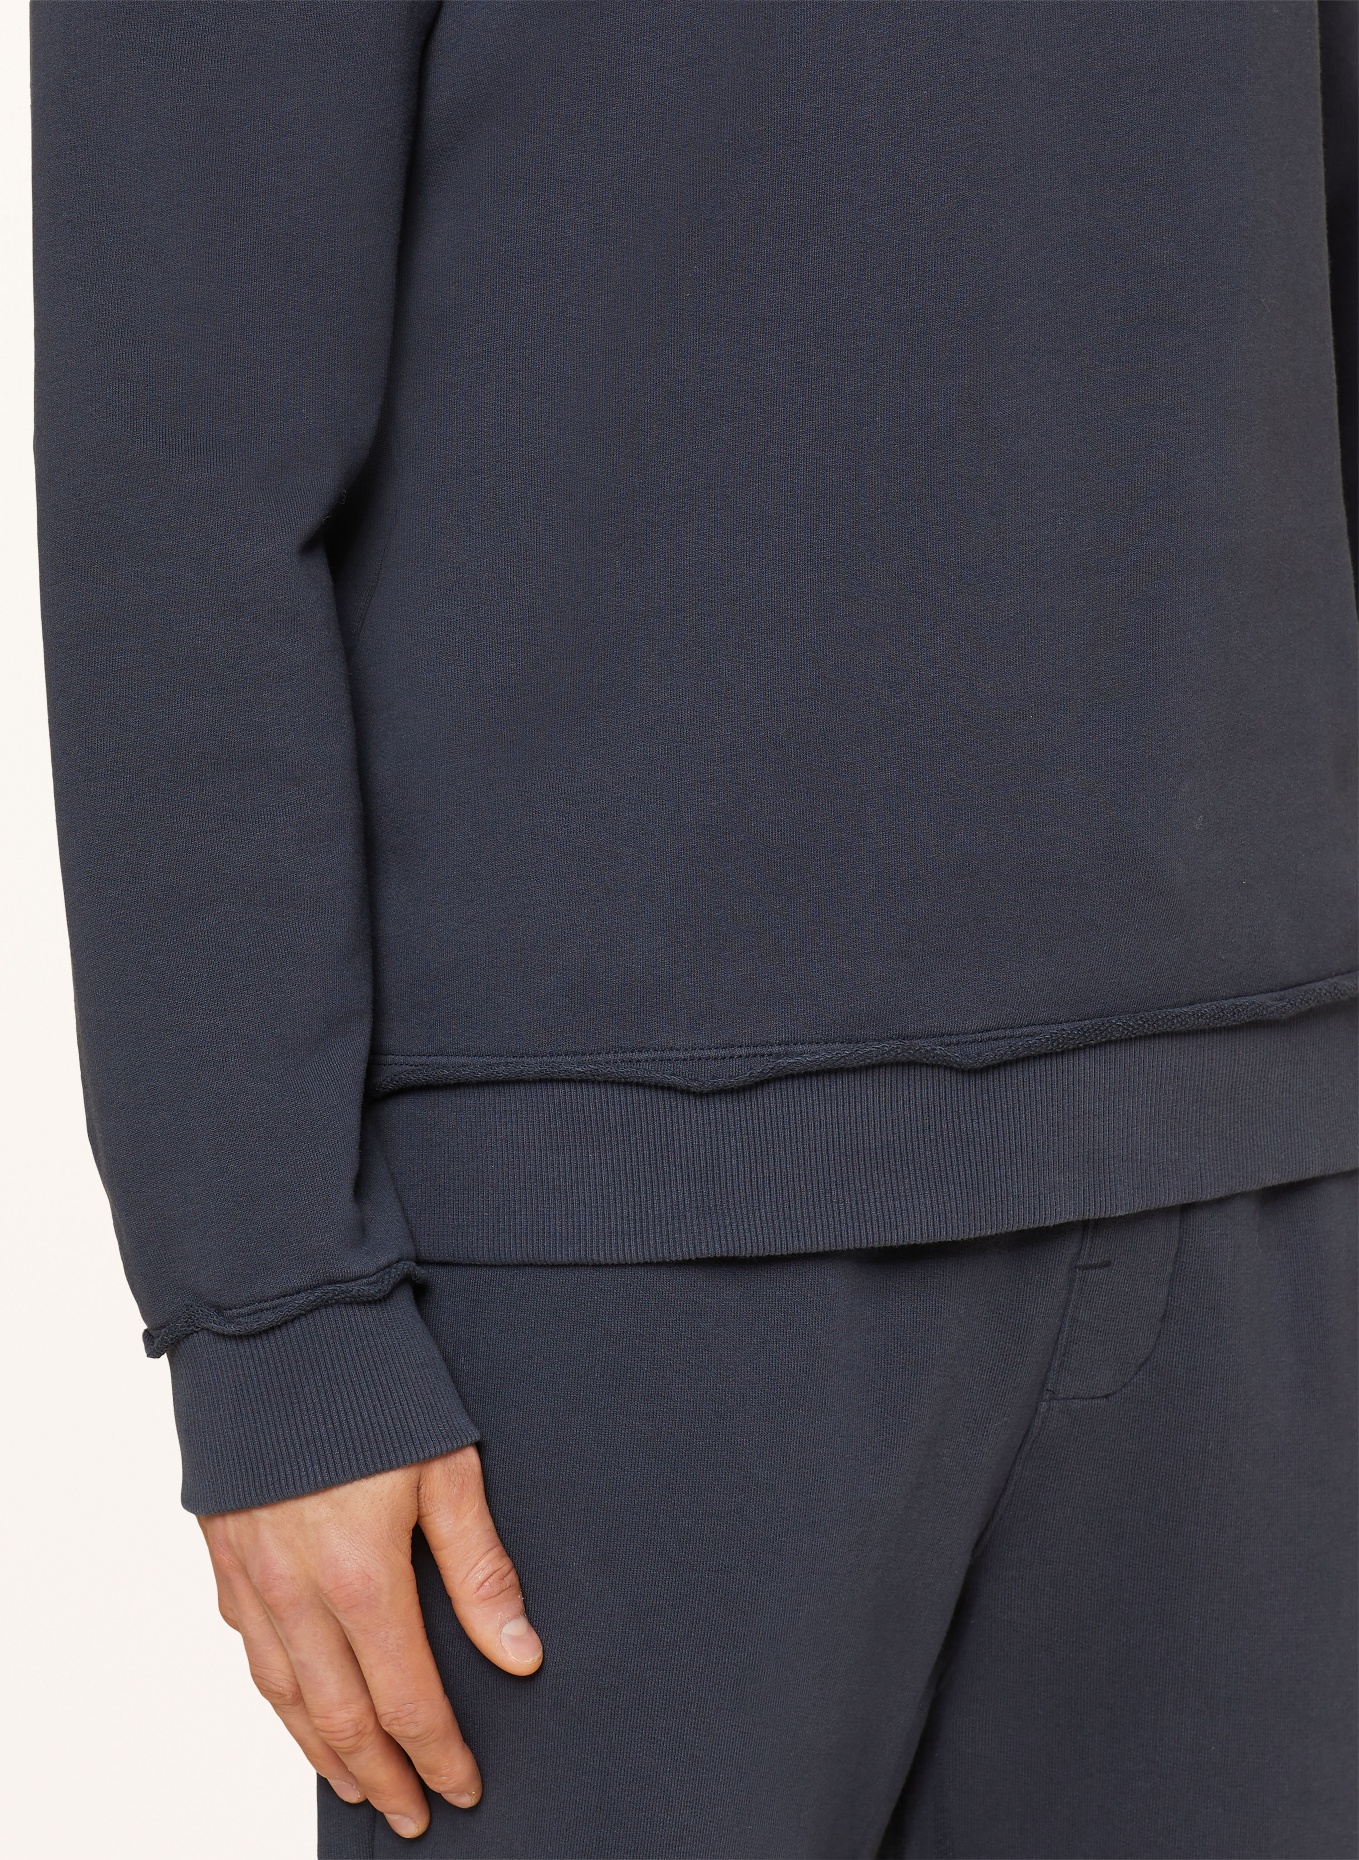 JOY sportswear Sweatshirt, Color: DARK BLUE (Image 4)